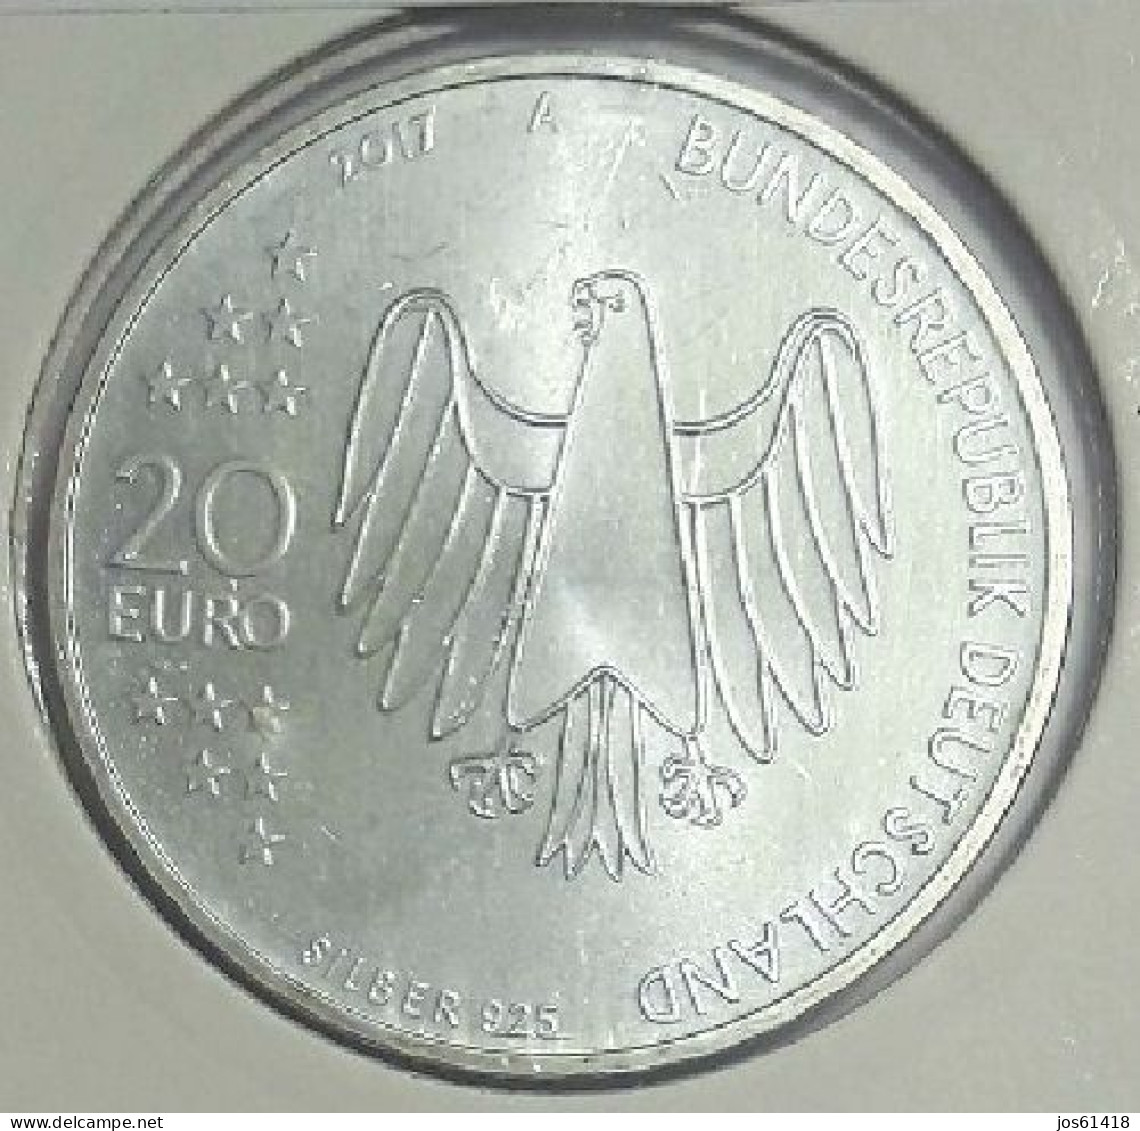 20 Euros Alemania / Germany   2017 500 Años De La Reforma   A  Plata - Germania